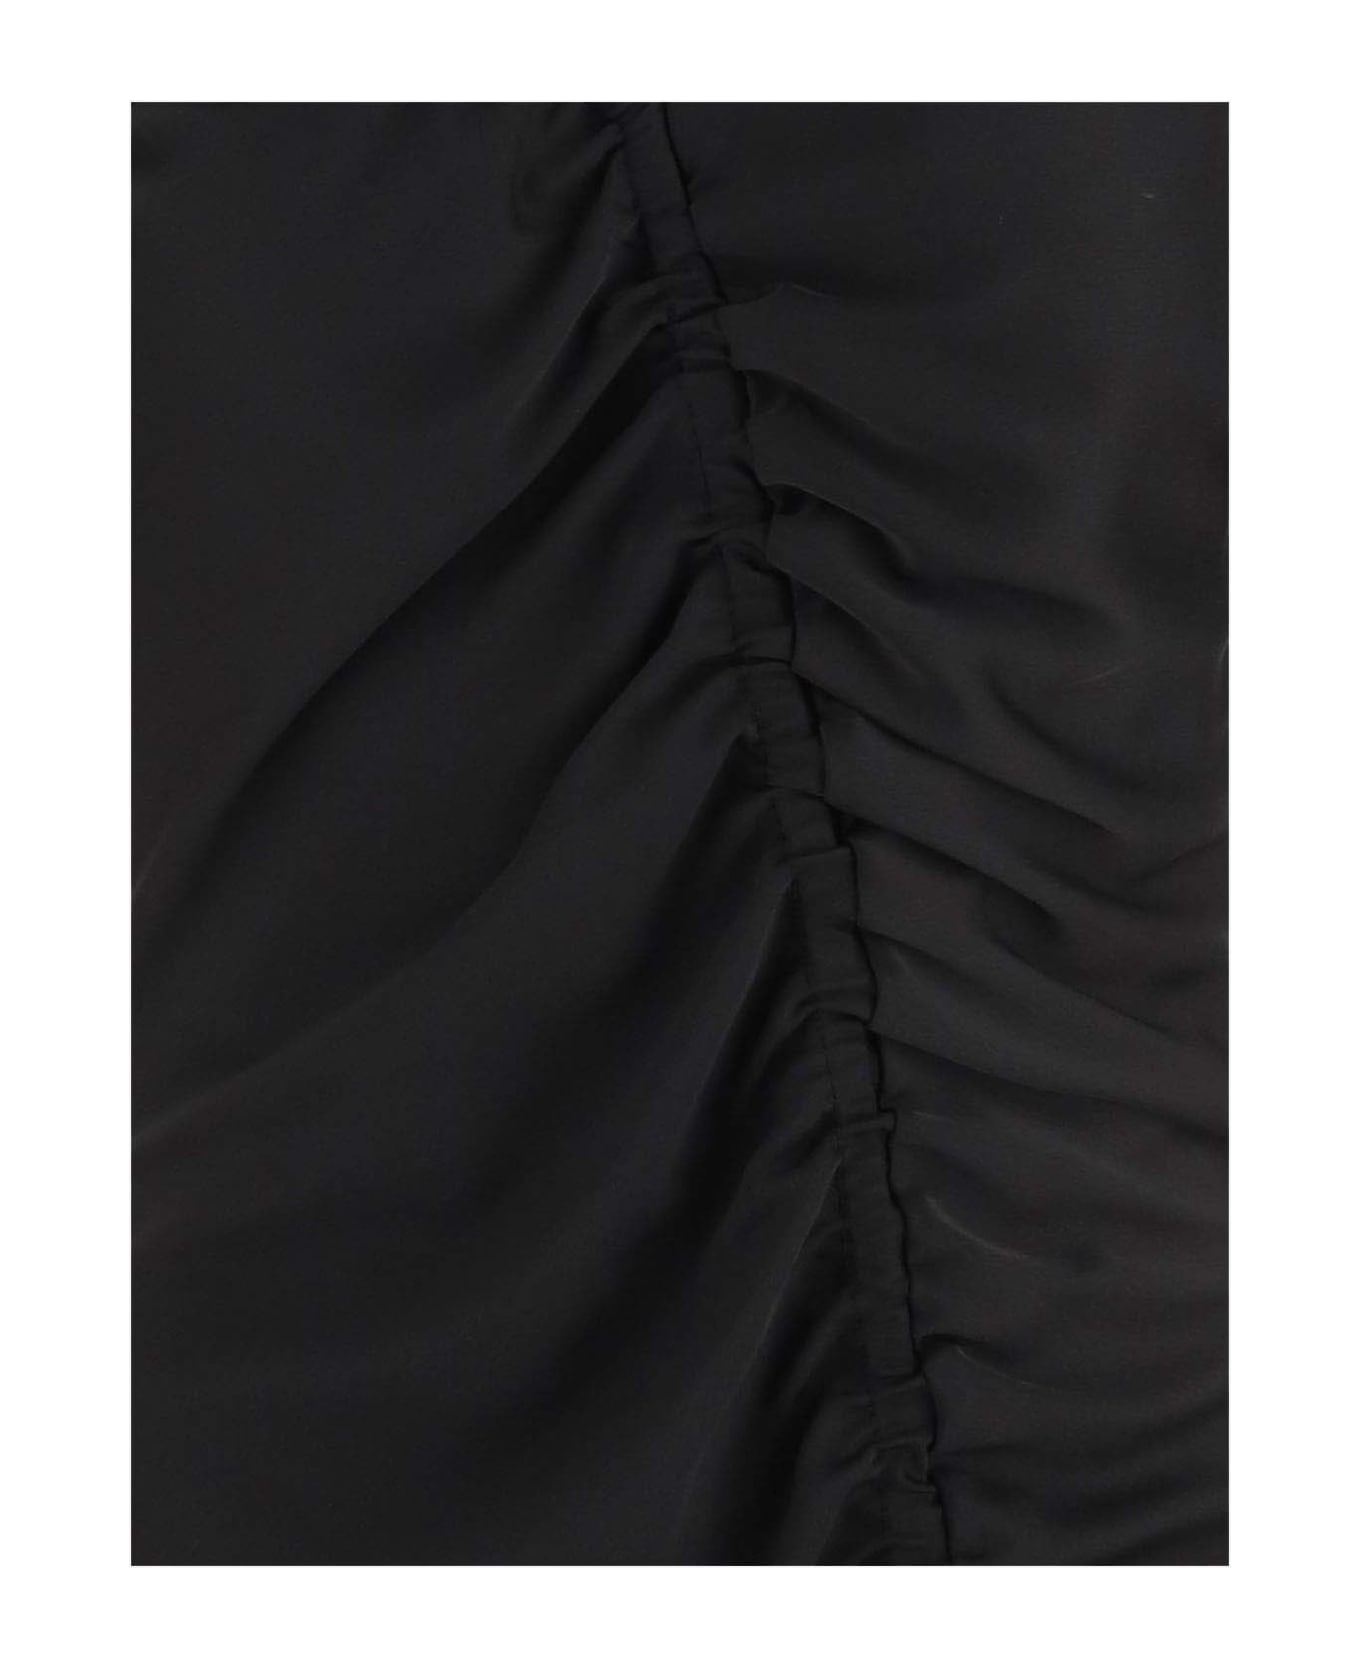 Pinko Draped Technical Jersey Dress - Black